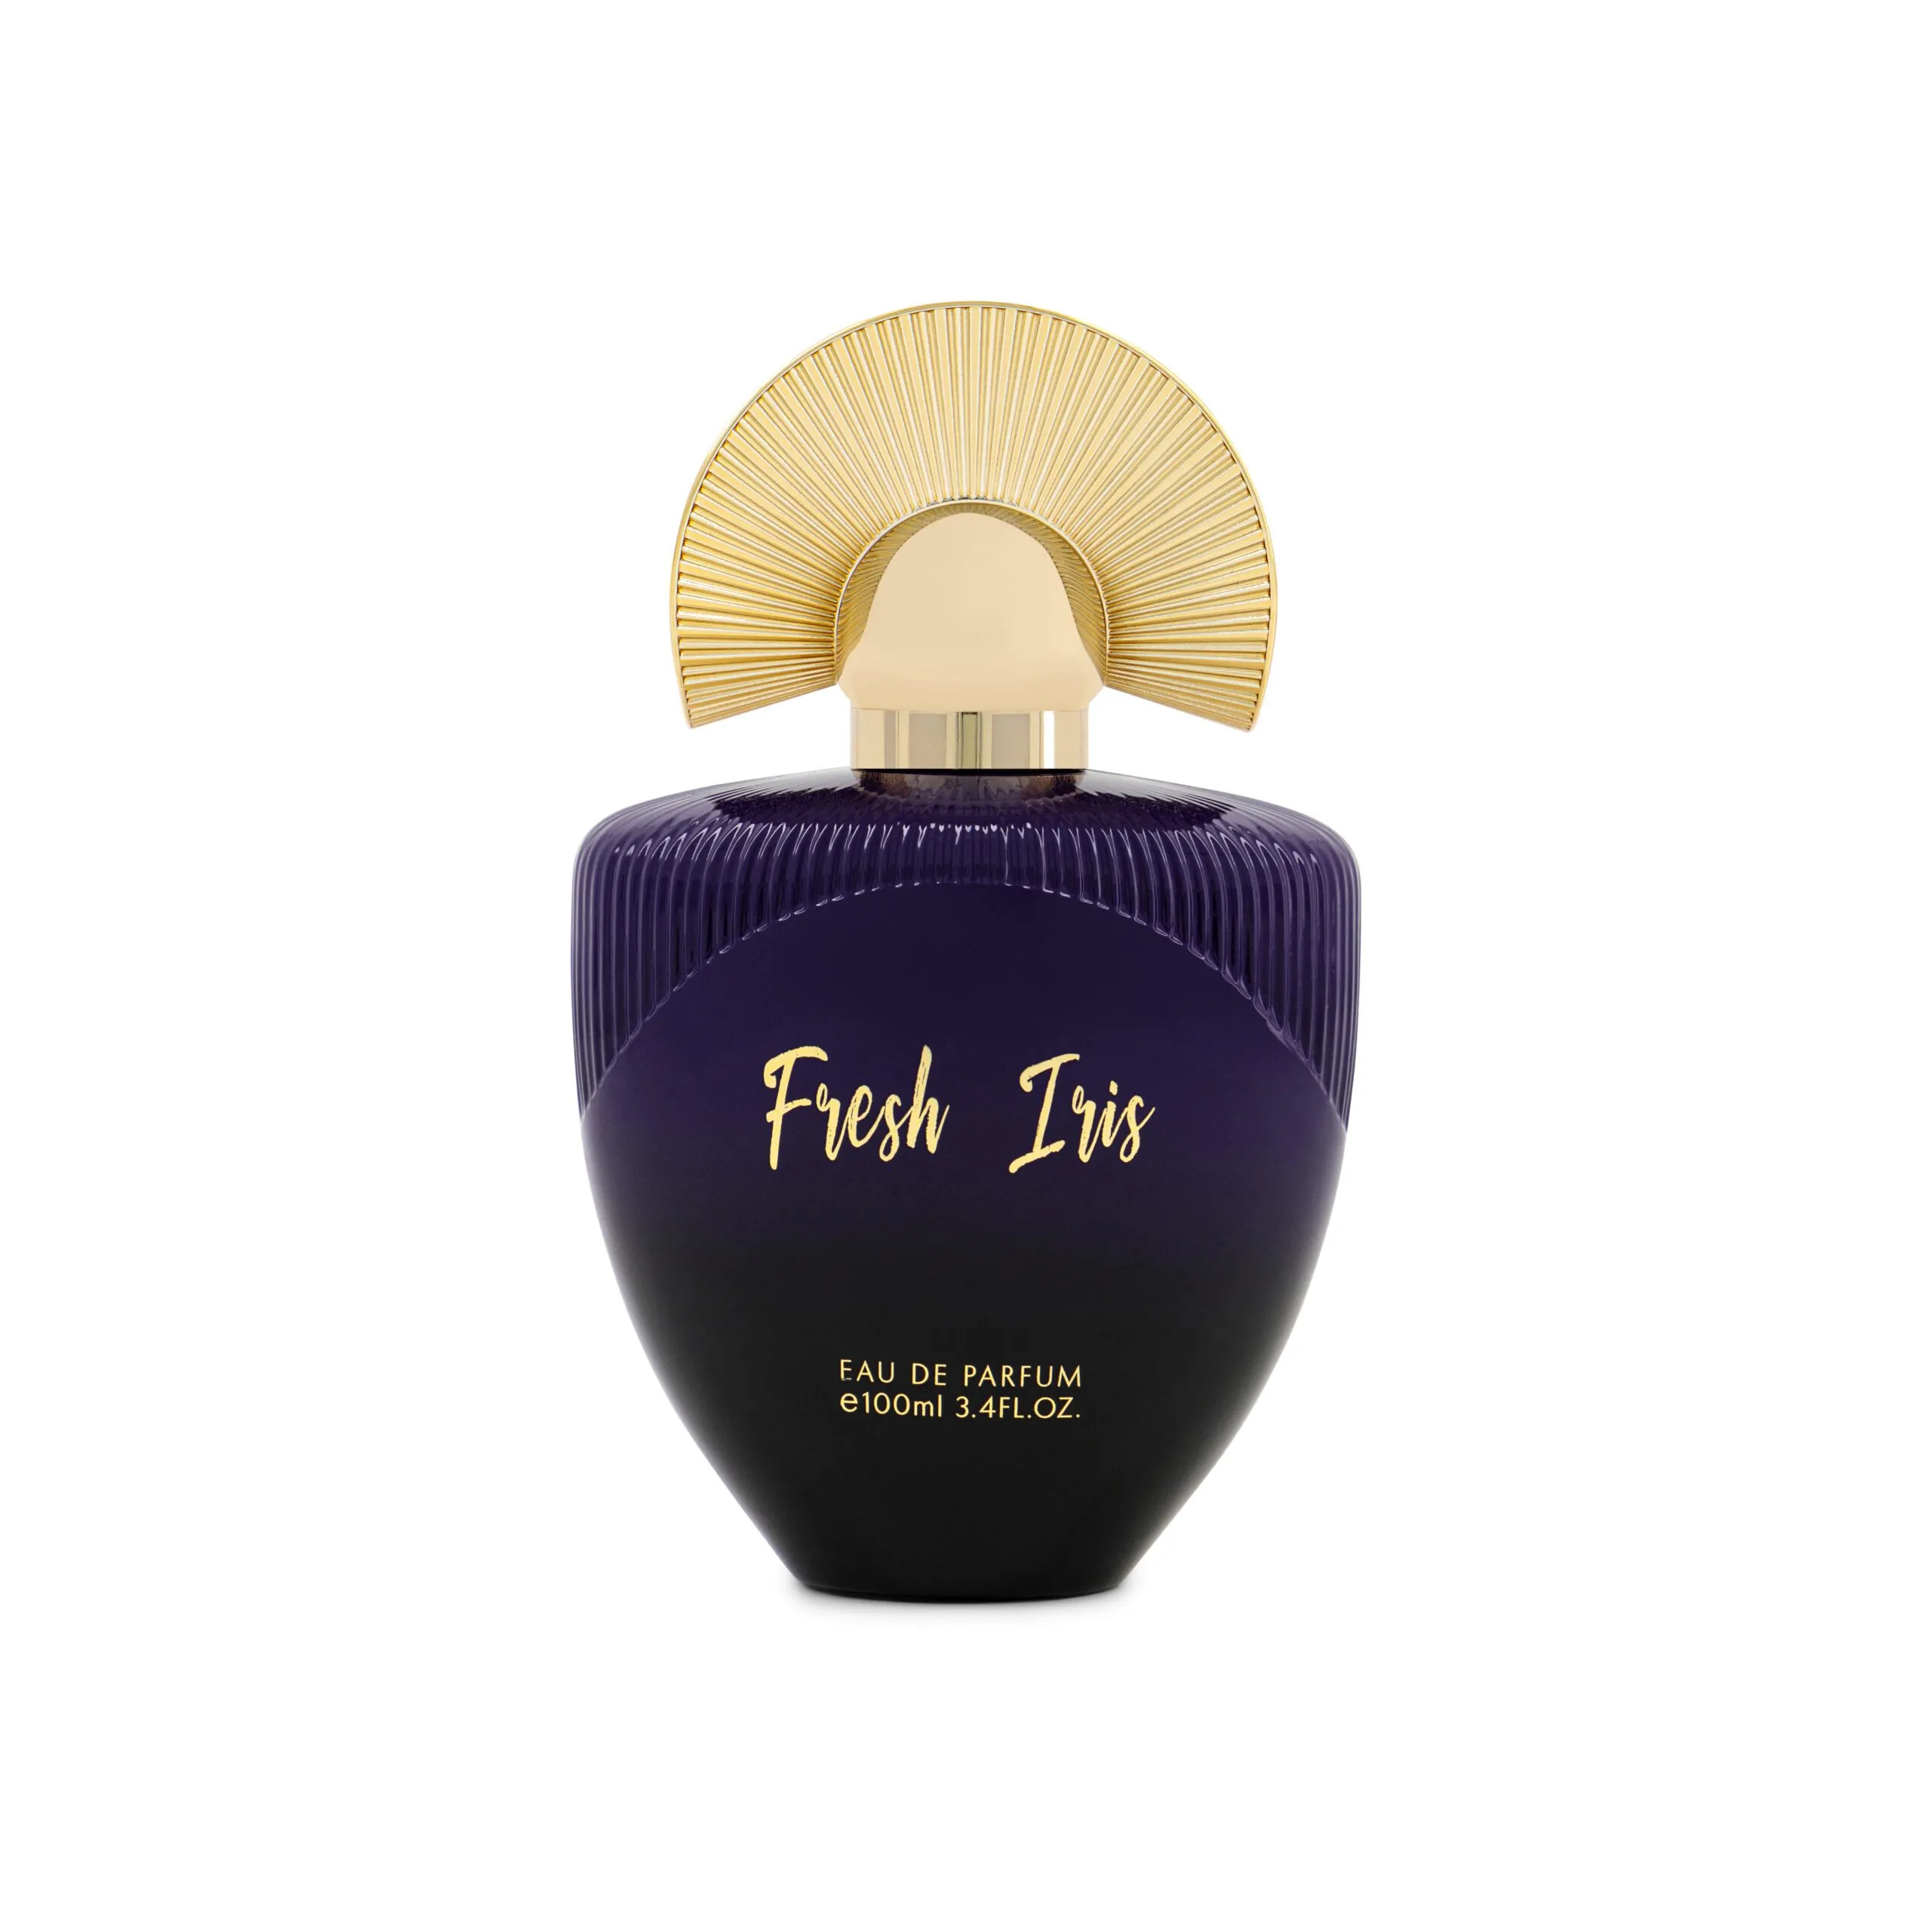 Fresh Iris – Eau De Parfum